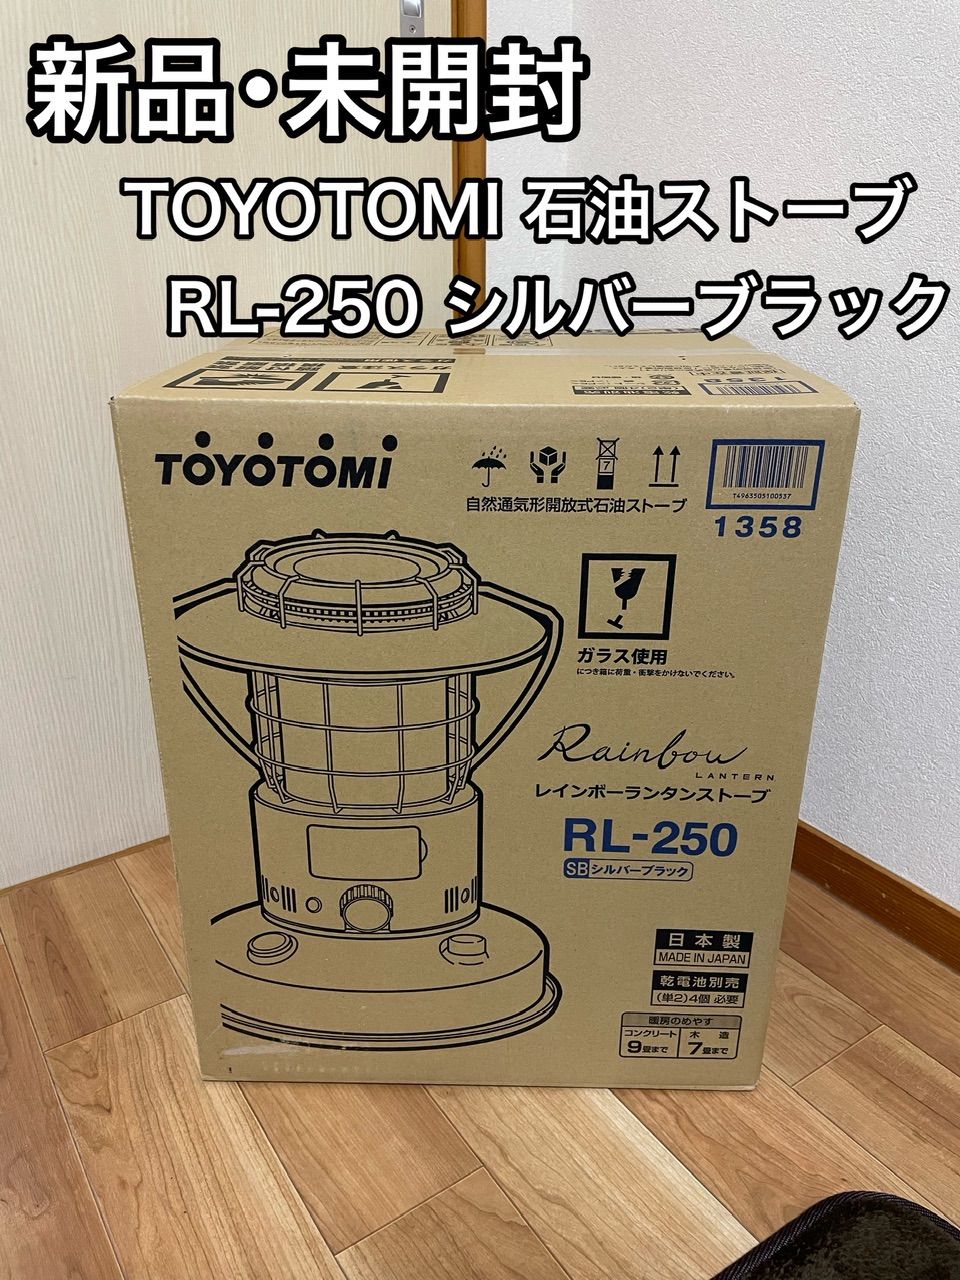 ランタン型 キャンプ用TOYOTOMI RL-250(G) 正規通販商品 家電・スマホ